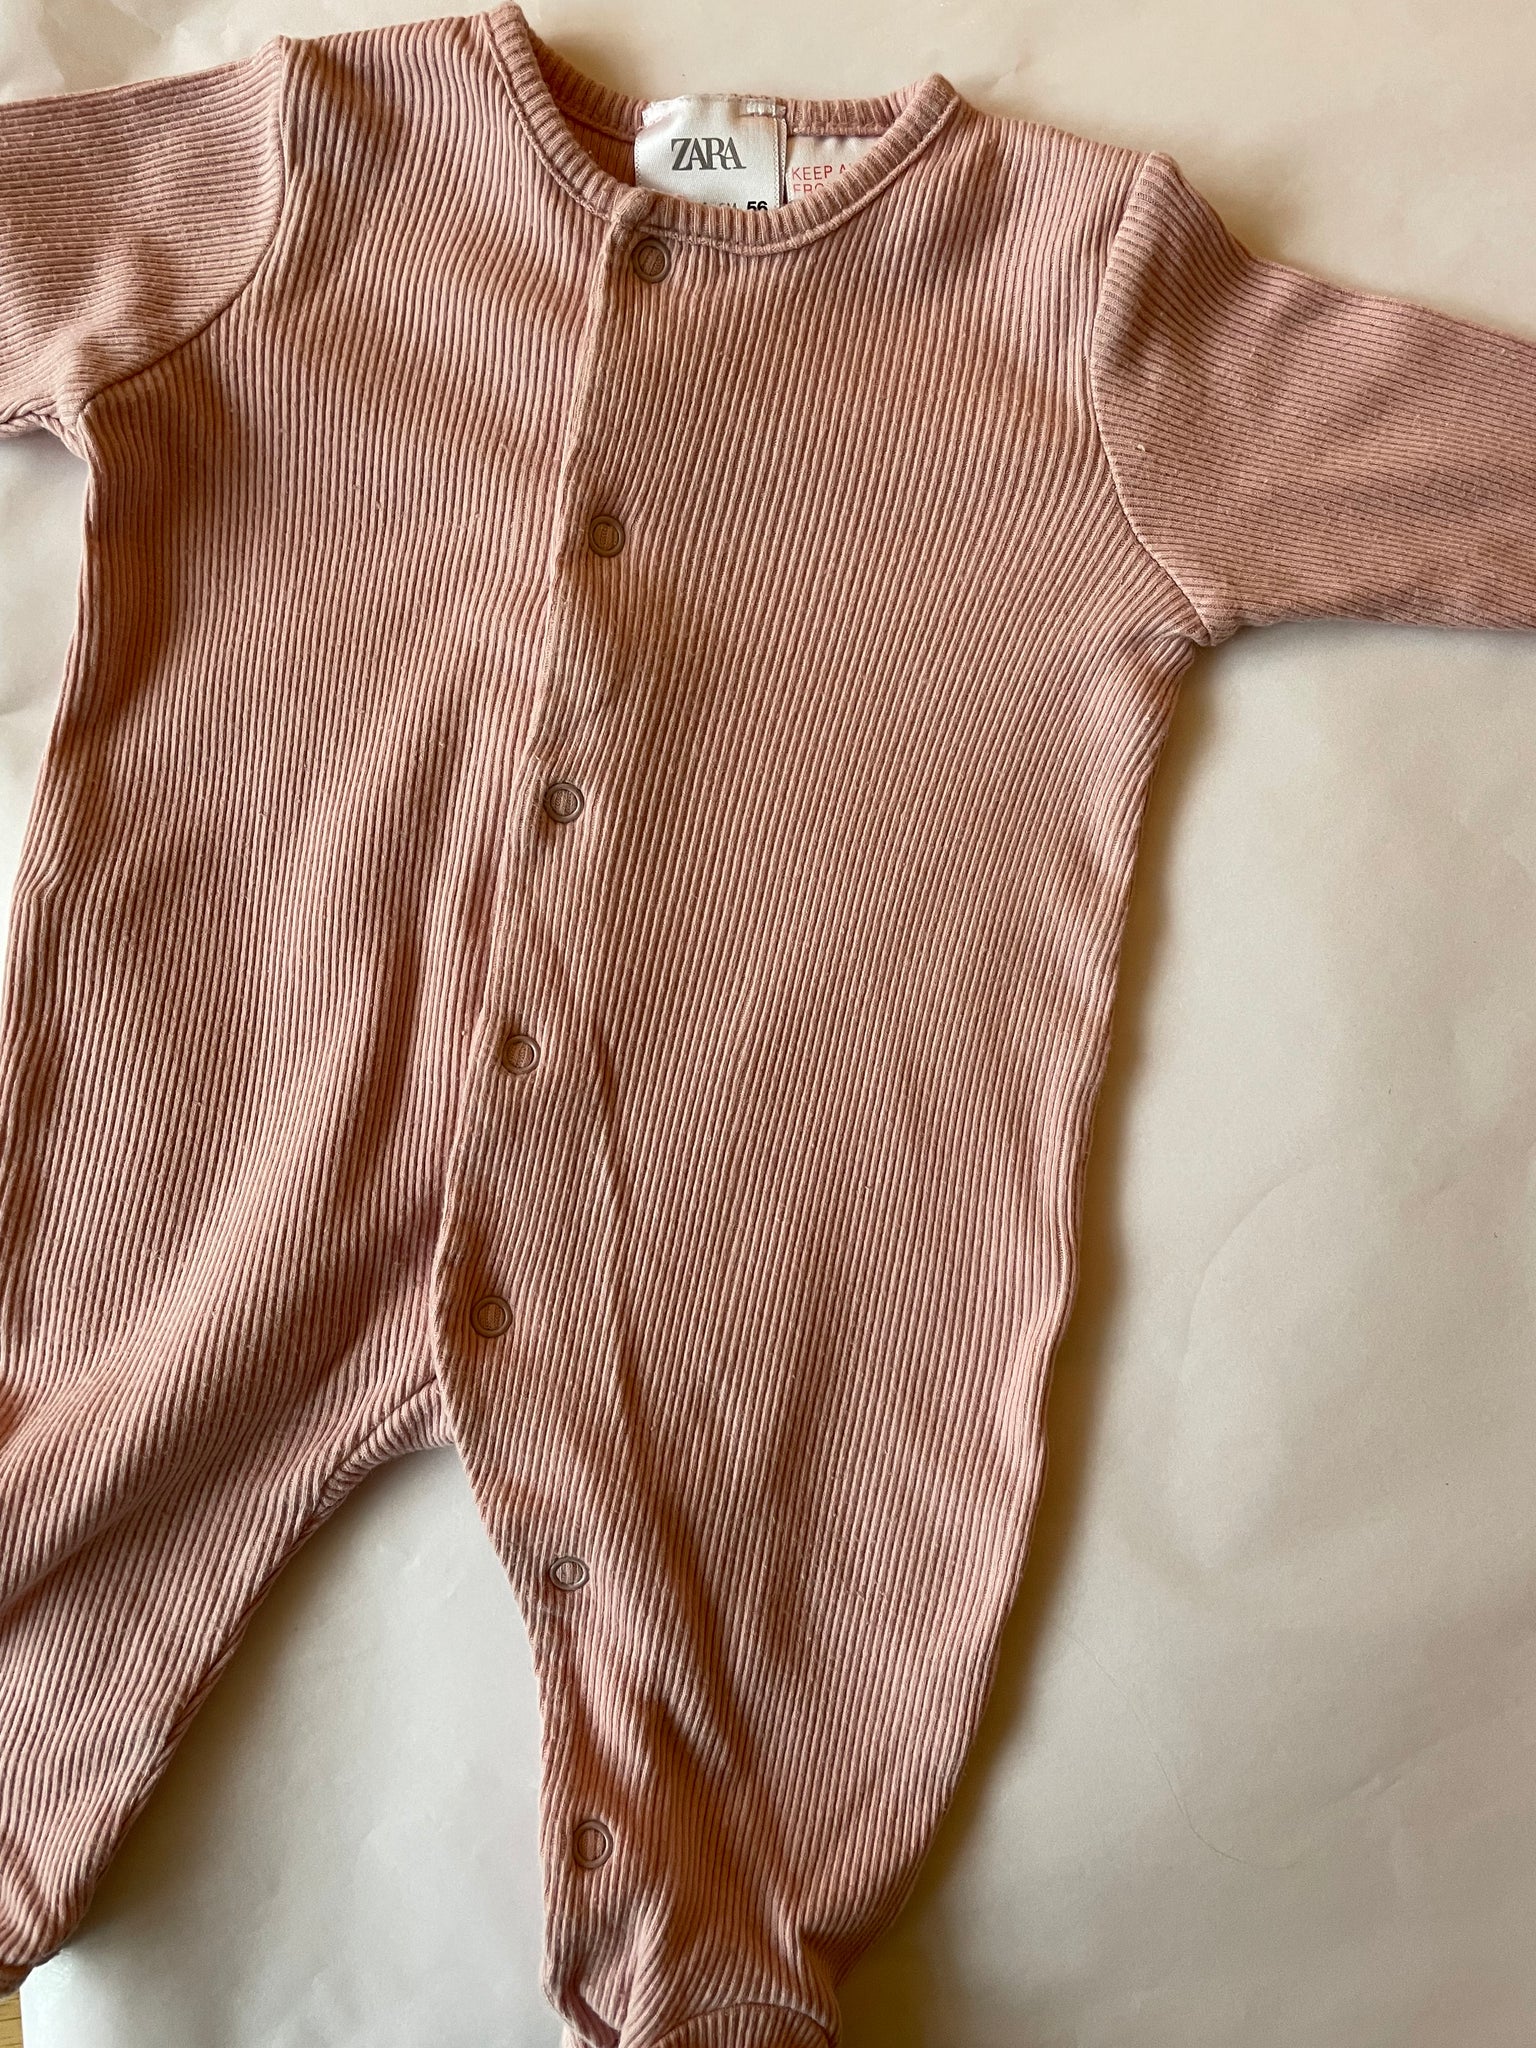 Pyjama Zara 0-1 mois 56 cm